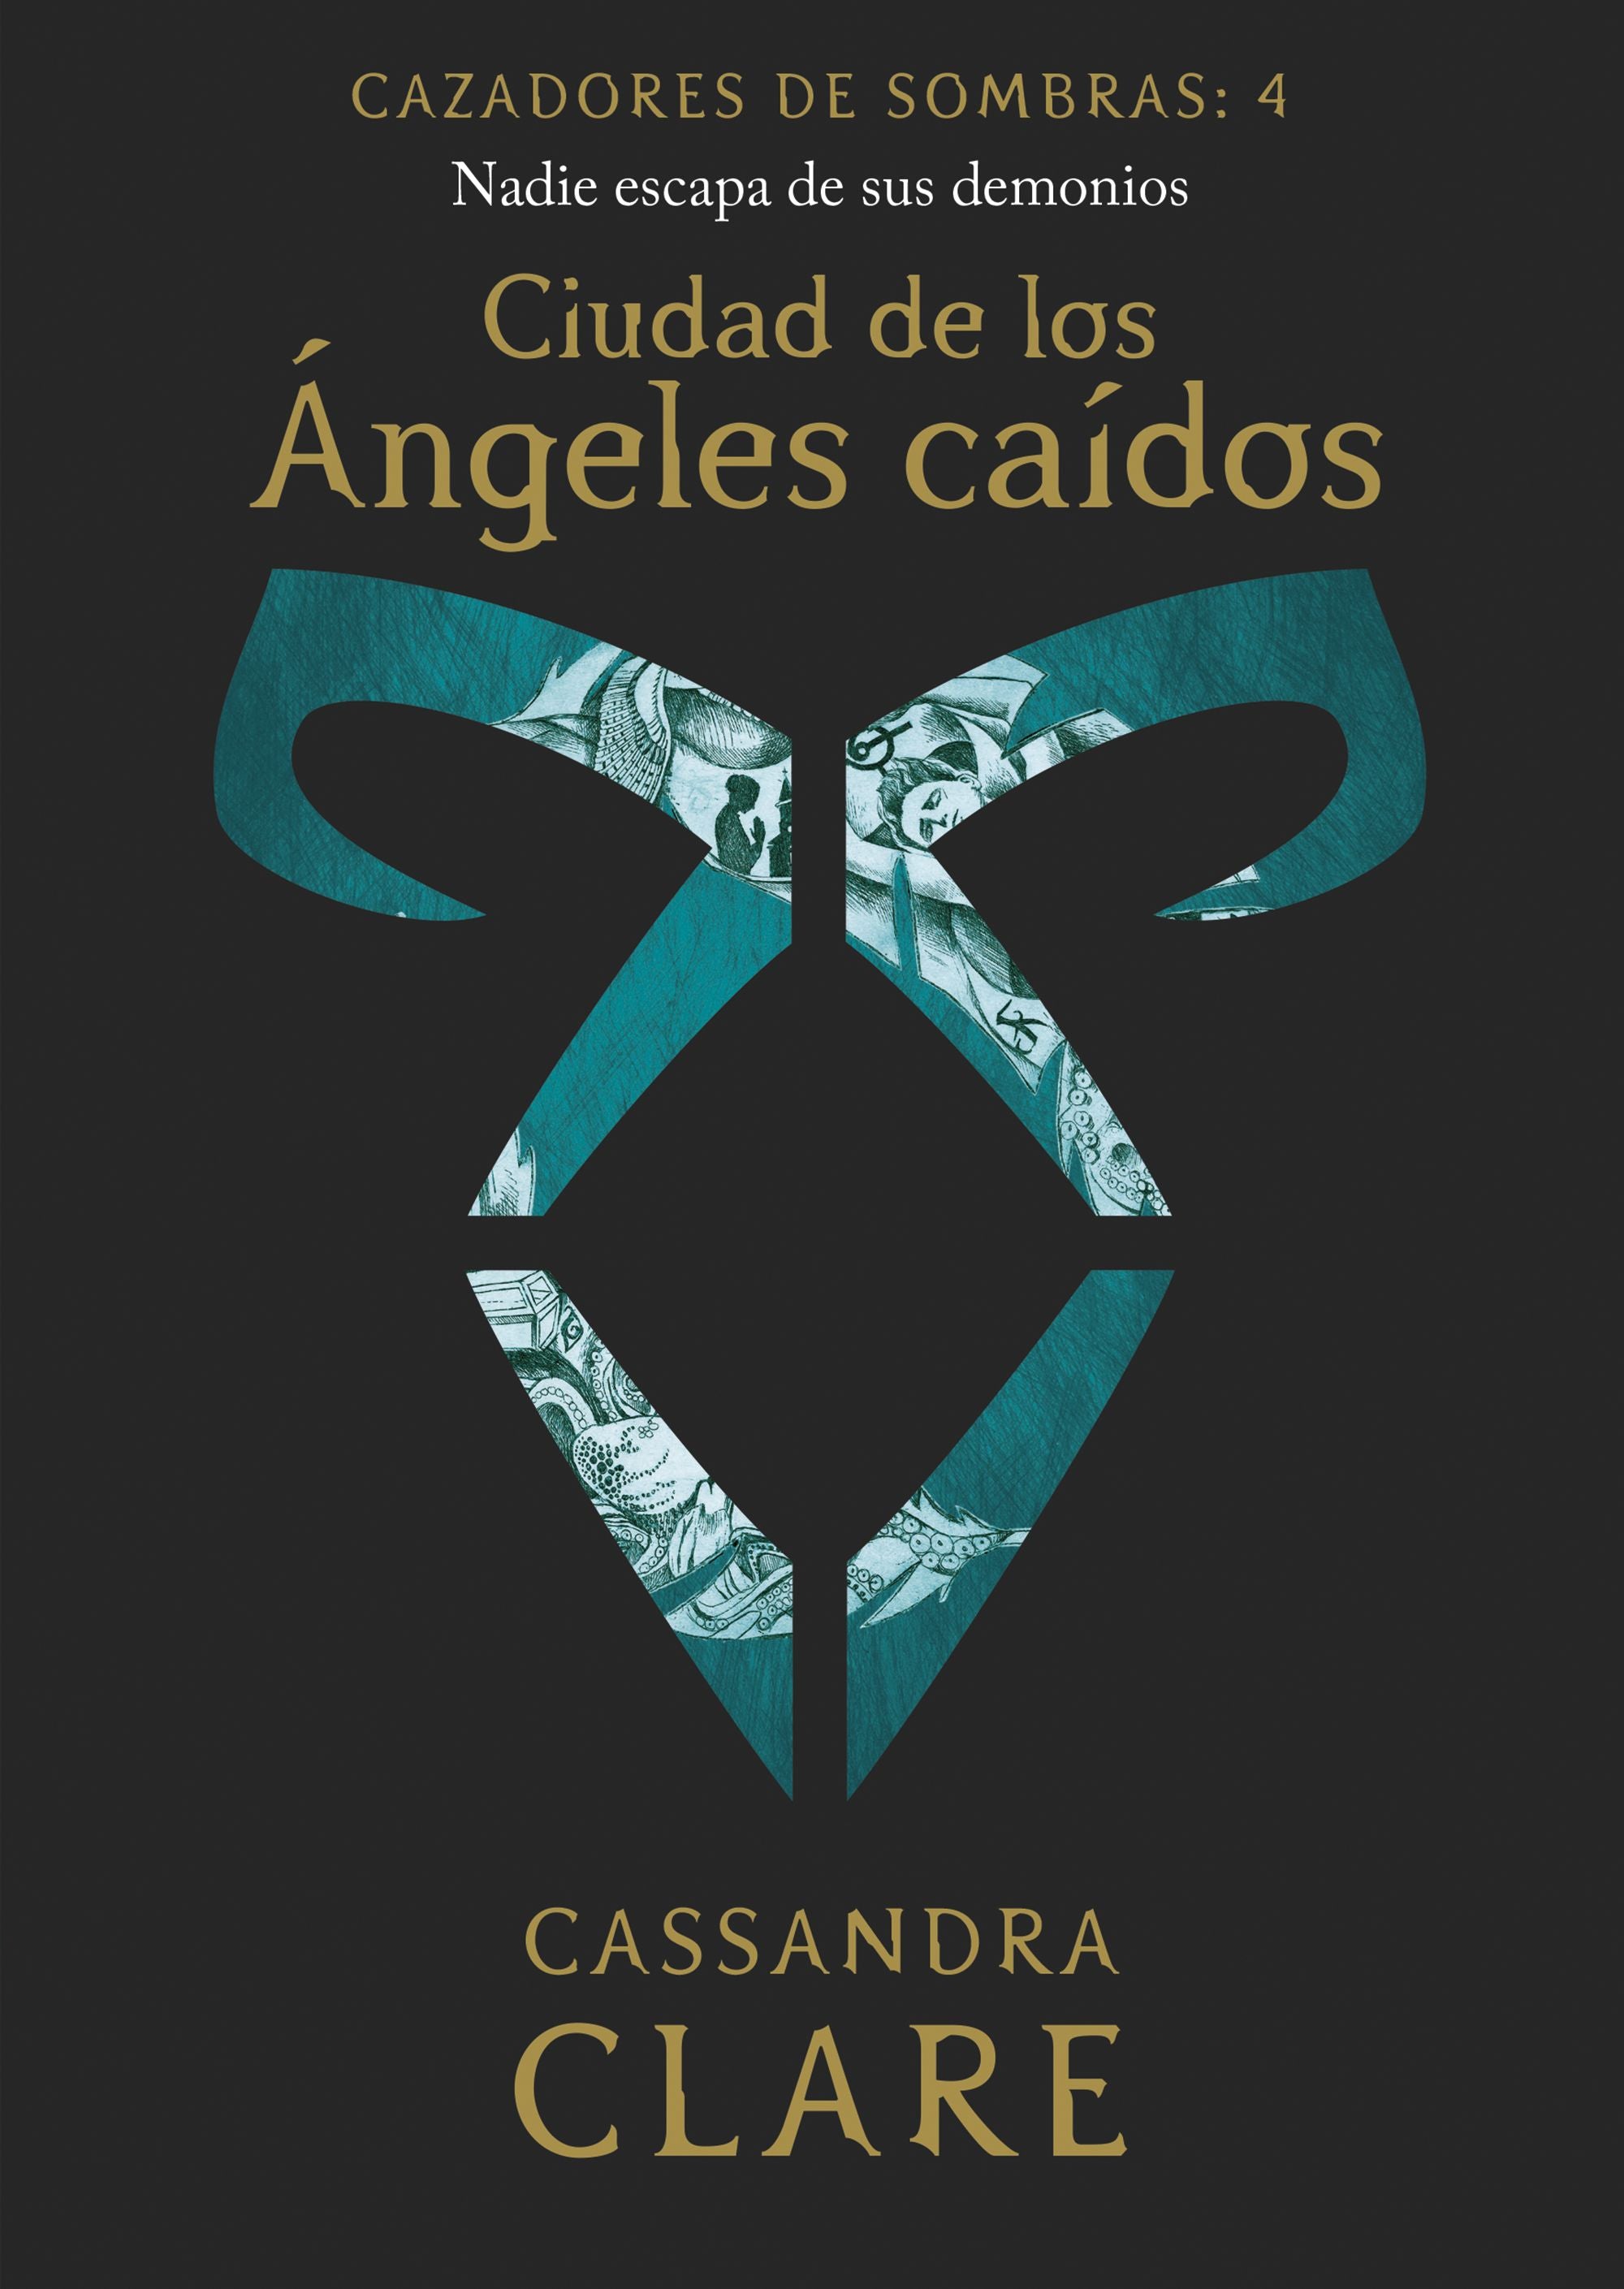 Ciudad de los Ángeles caídos  (nueva presentación) - Cassandra Clare